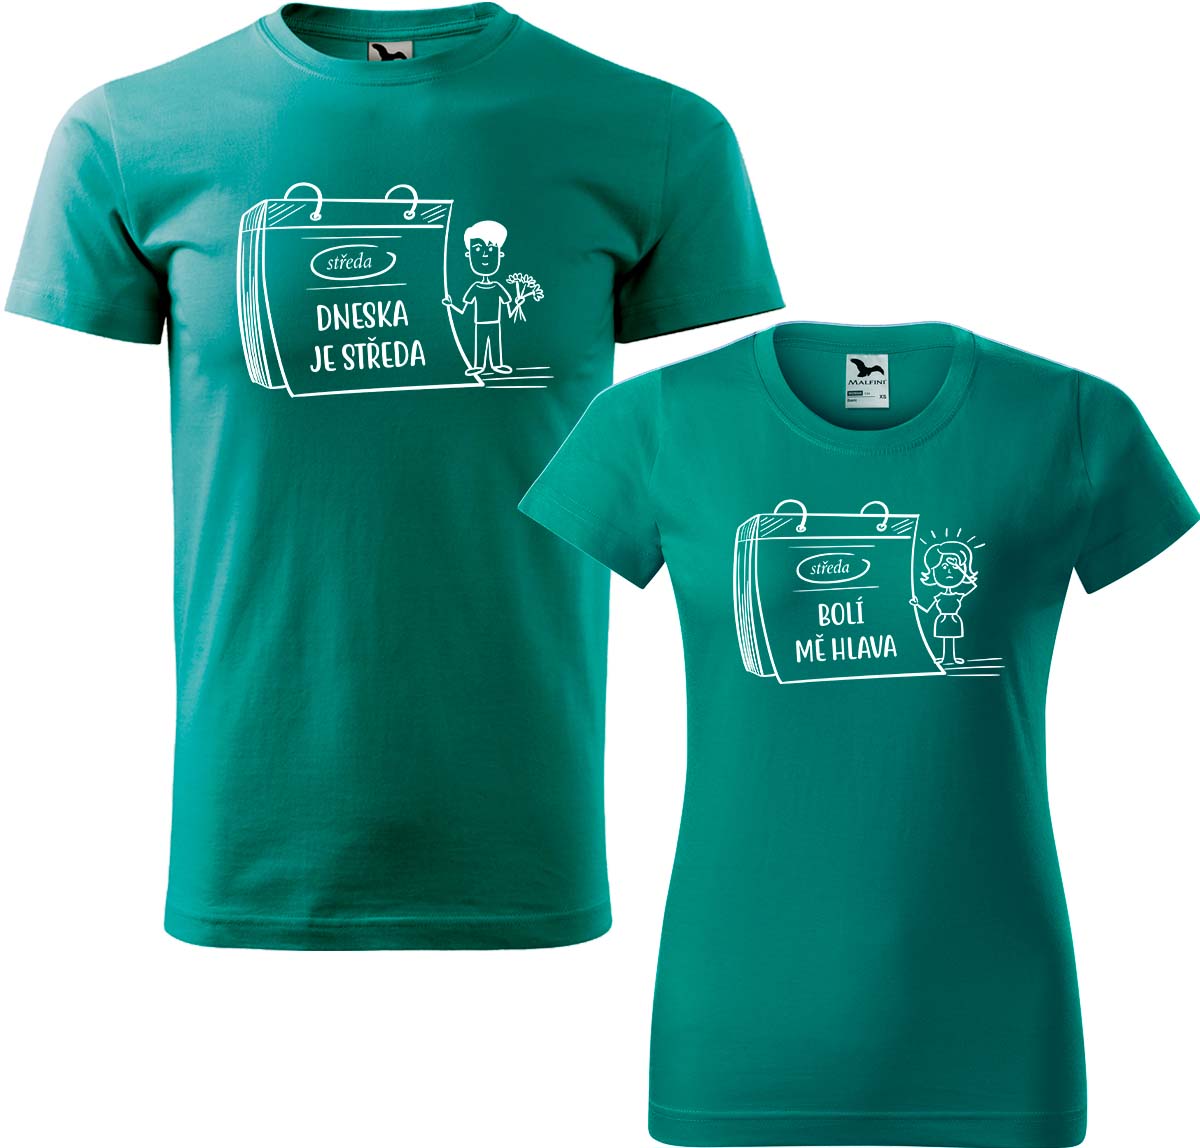 Trička pro páry - Dneska je středa Barva: Emerald (19), Velikost dámské tričko: S, Velikost pánské tričko: XL